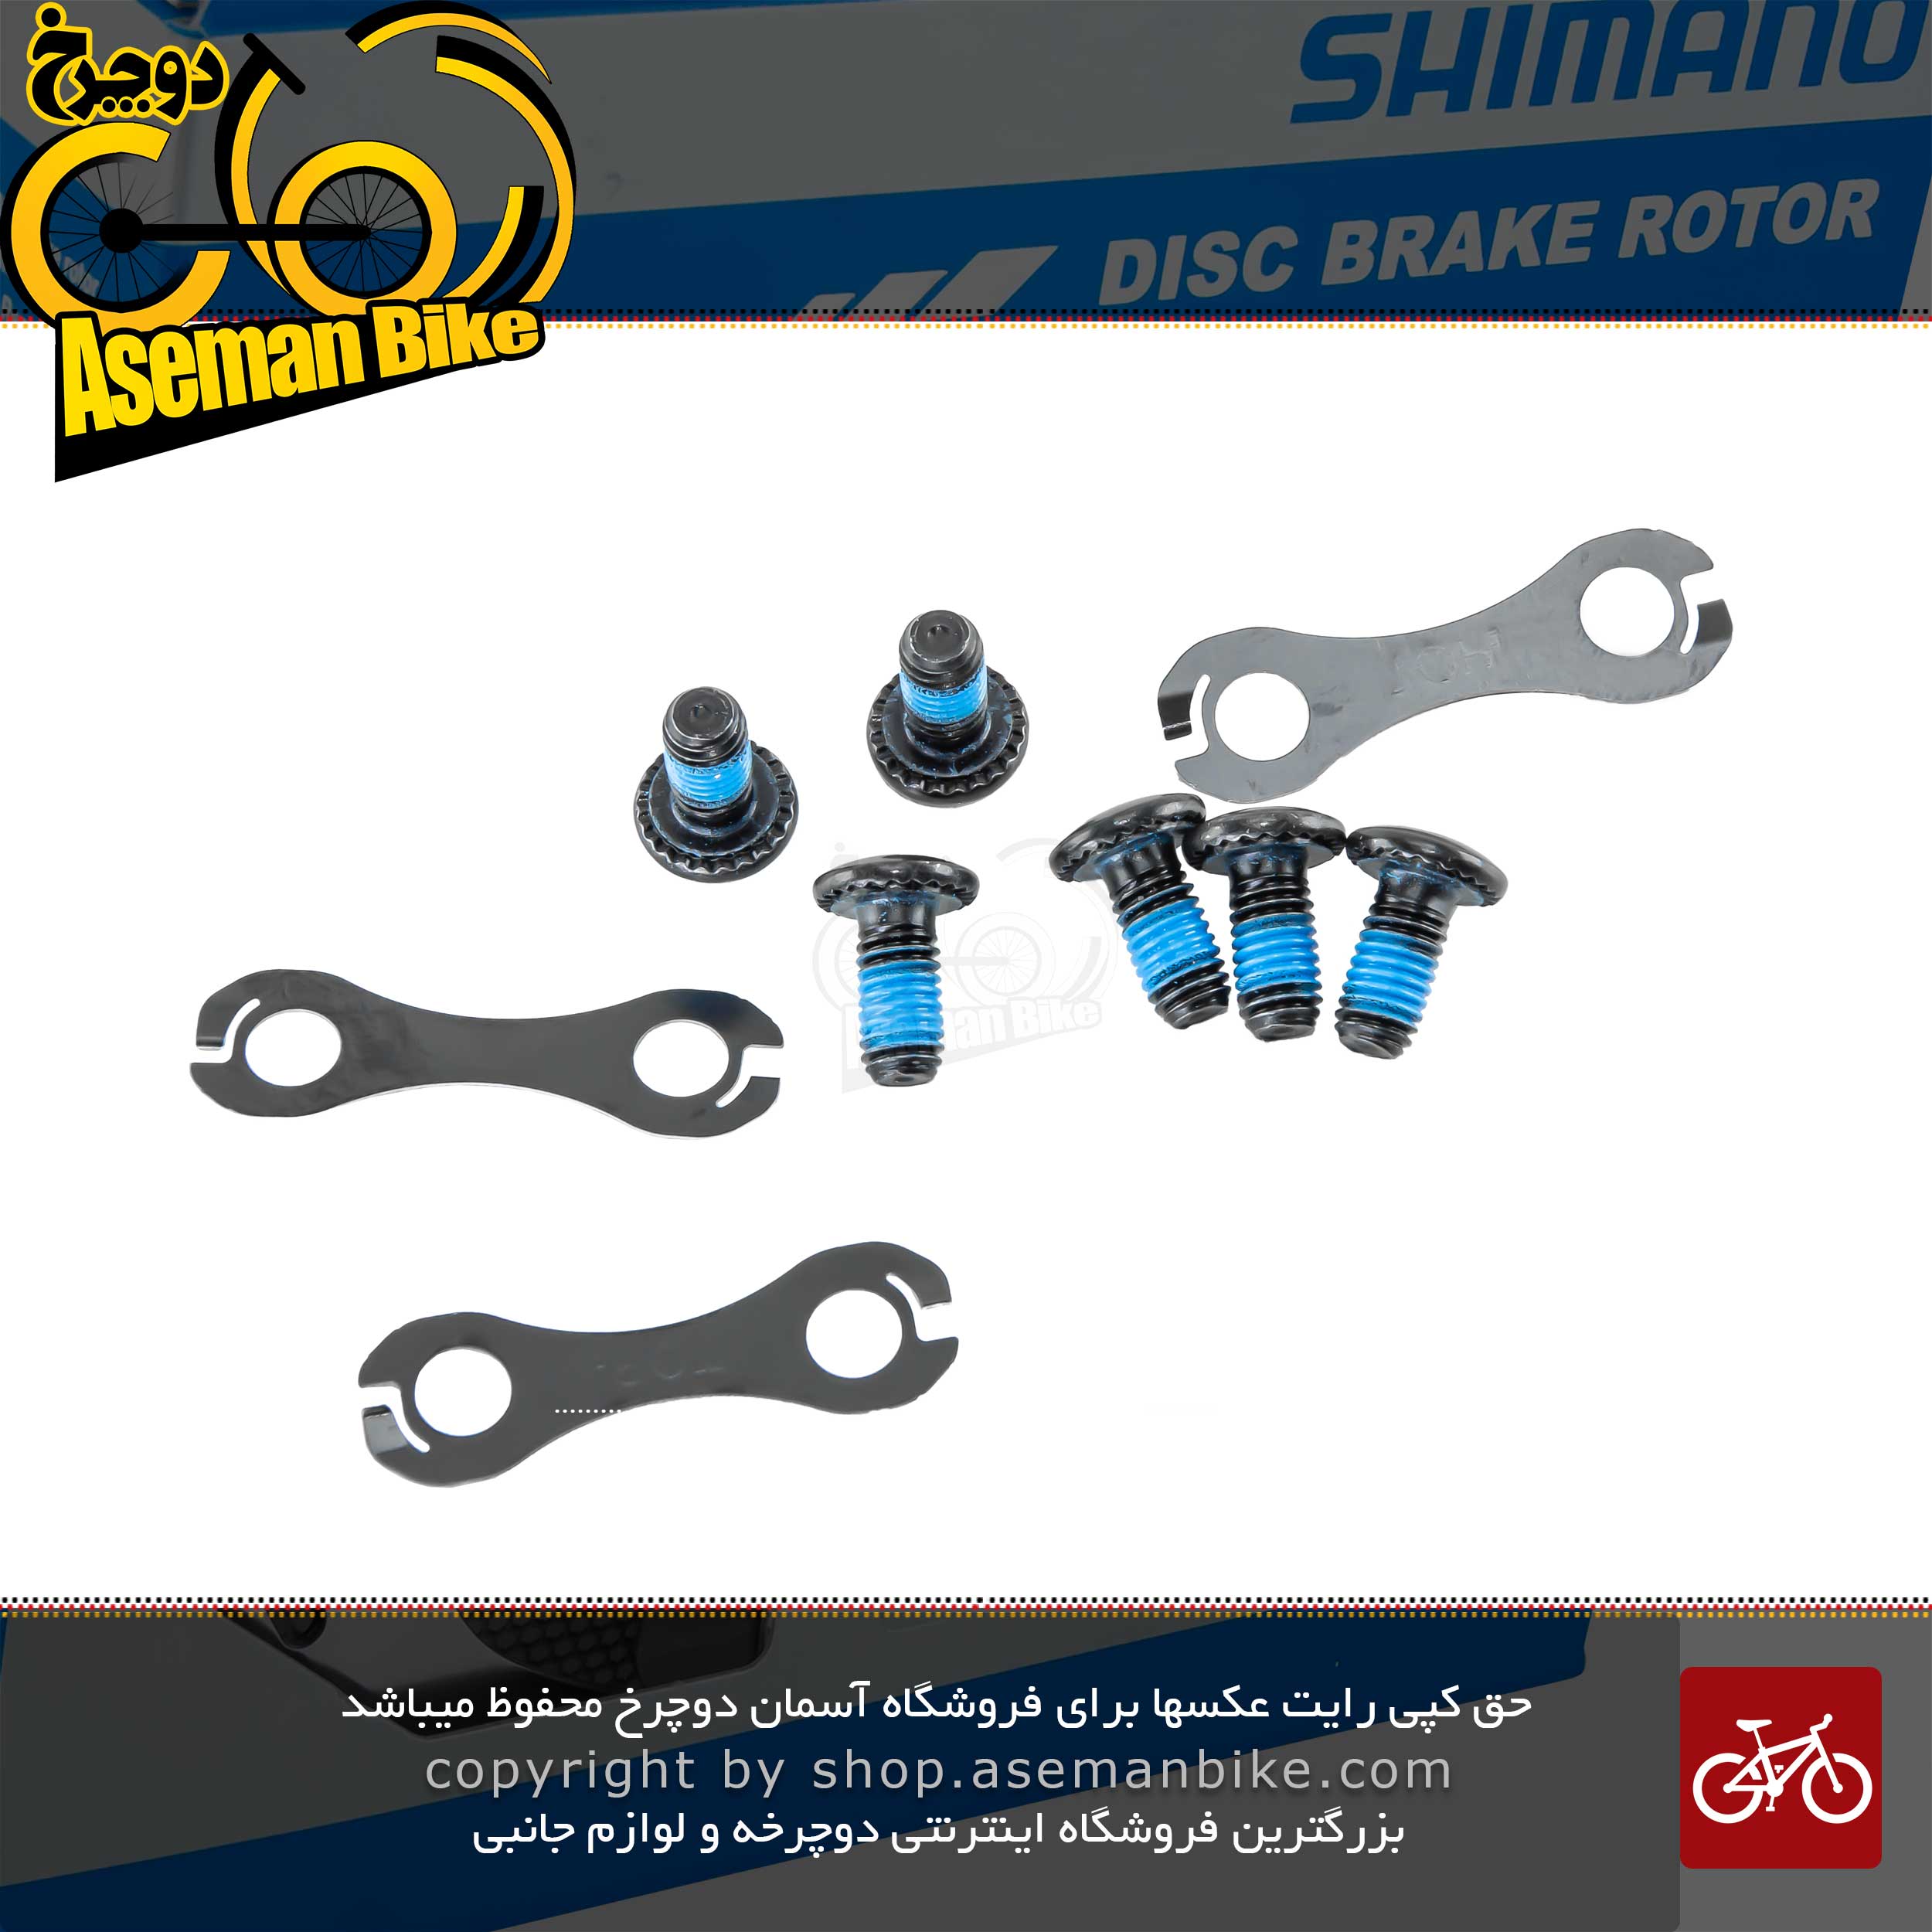 صفحه دیسک ترمز هیدرولیک شش 6 پیچ دوچرخه برند شیمانو مدل اس ام - آر تی 86 160 میلیمتری Shimano Rotor Disc SM-RT86 160mm